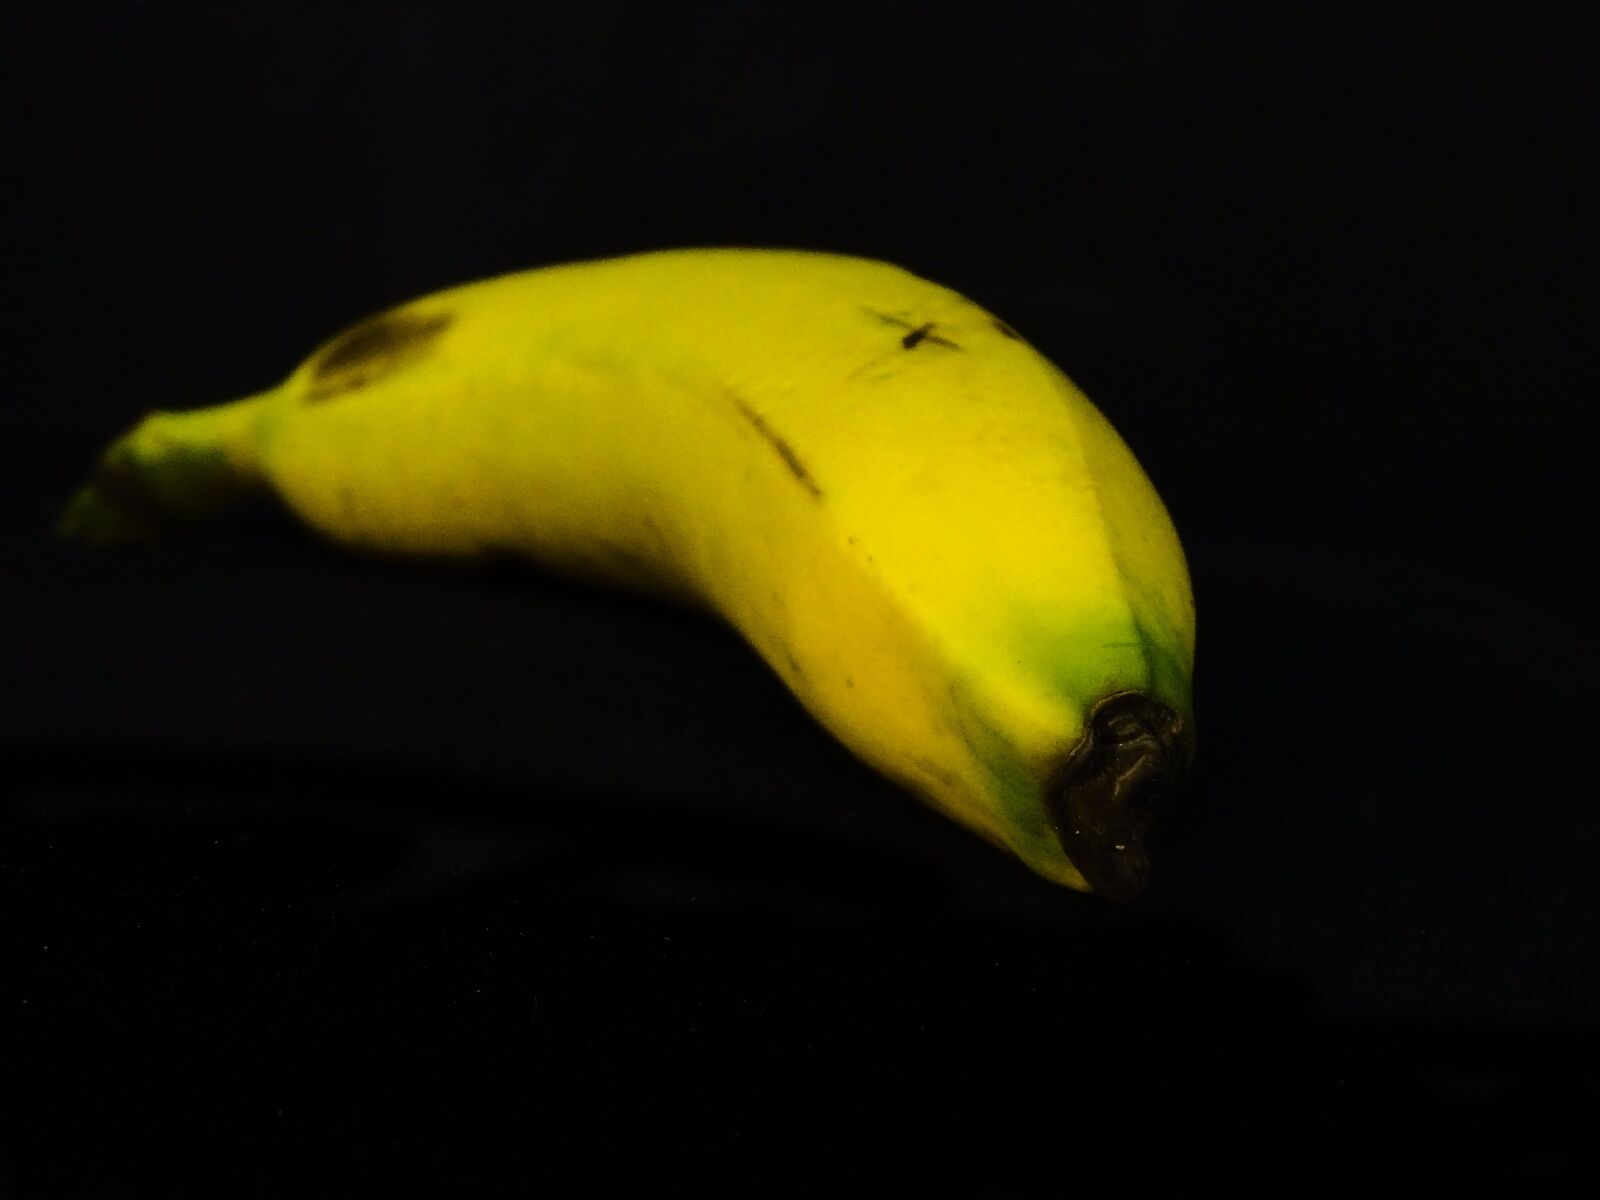 Sony Cyber-shot DSC-HX350 sample photo. Banana, amarillo, fruta photography